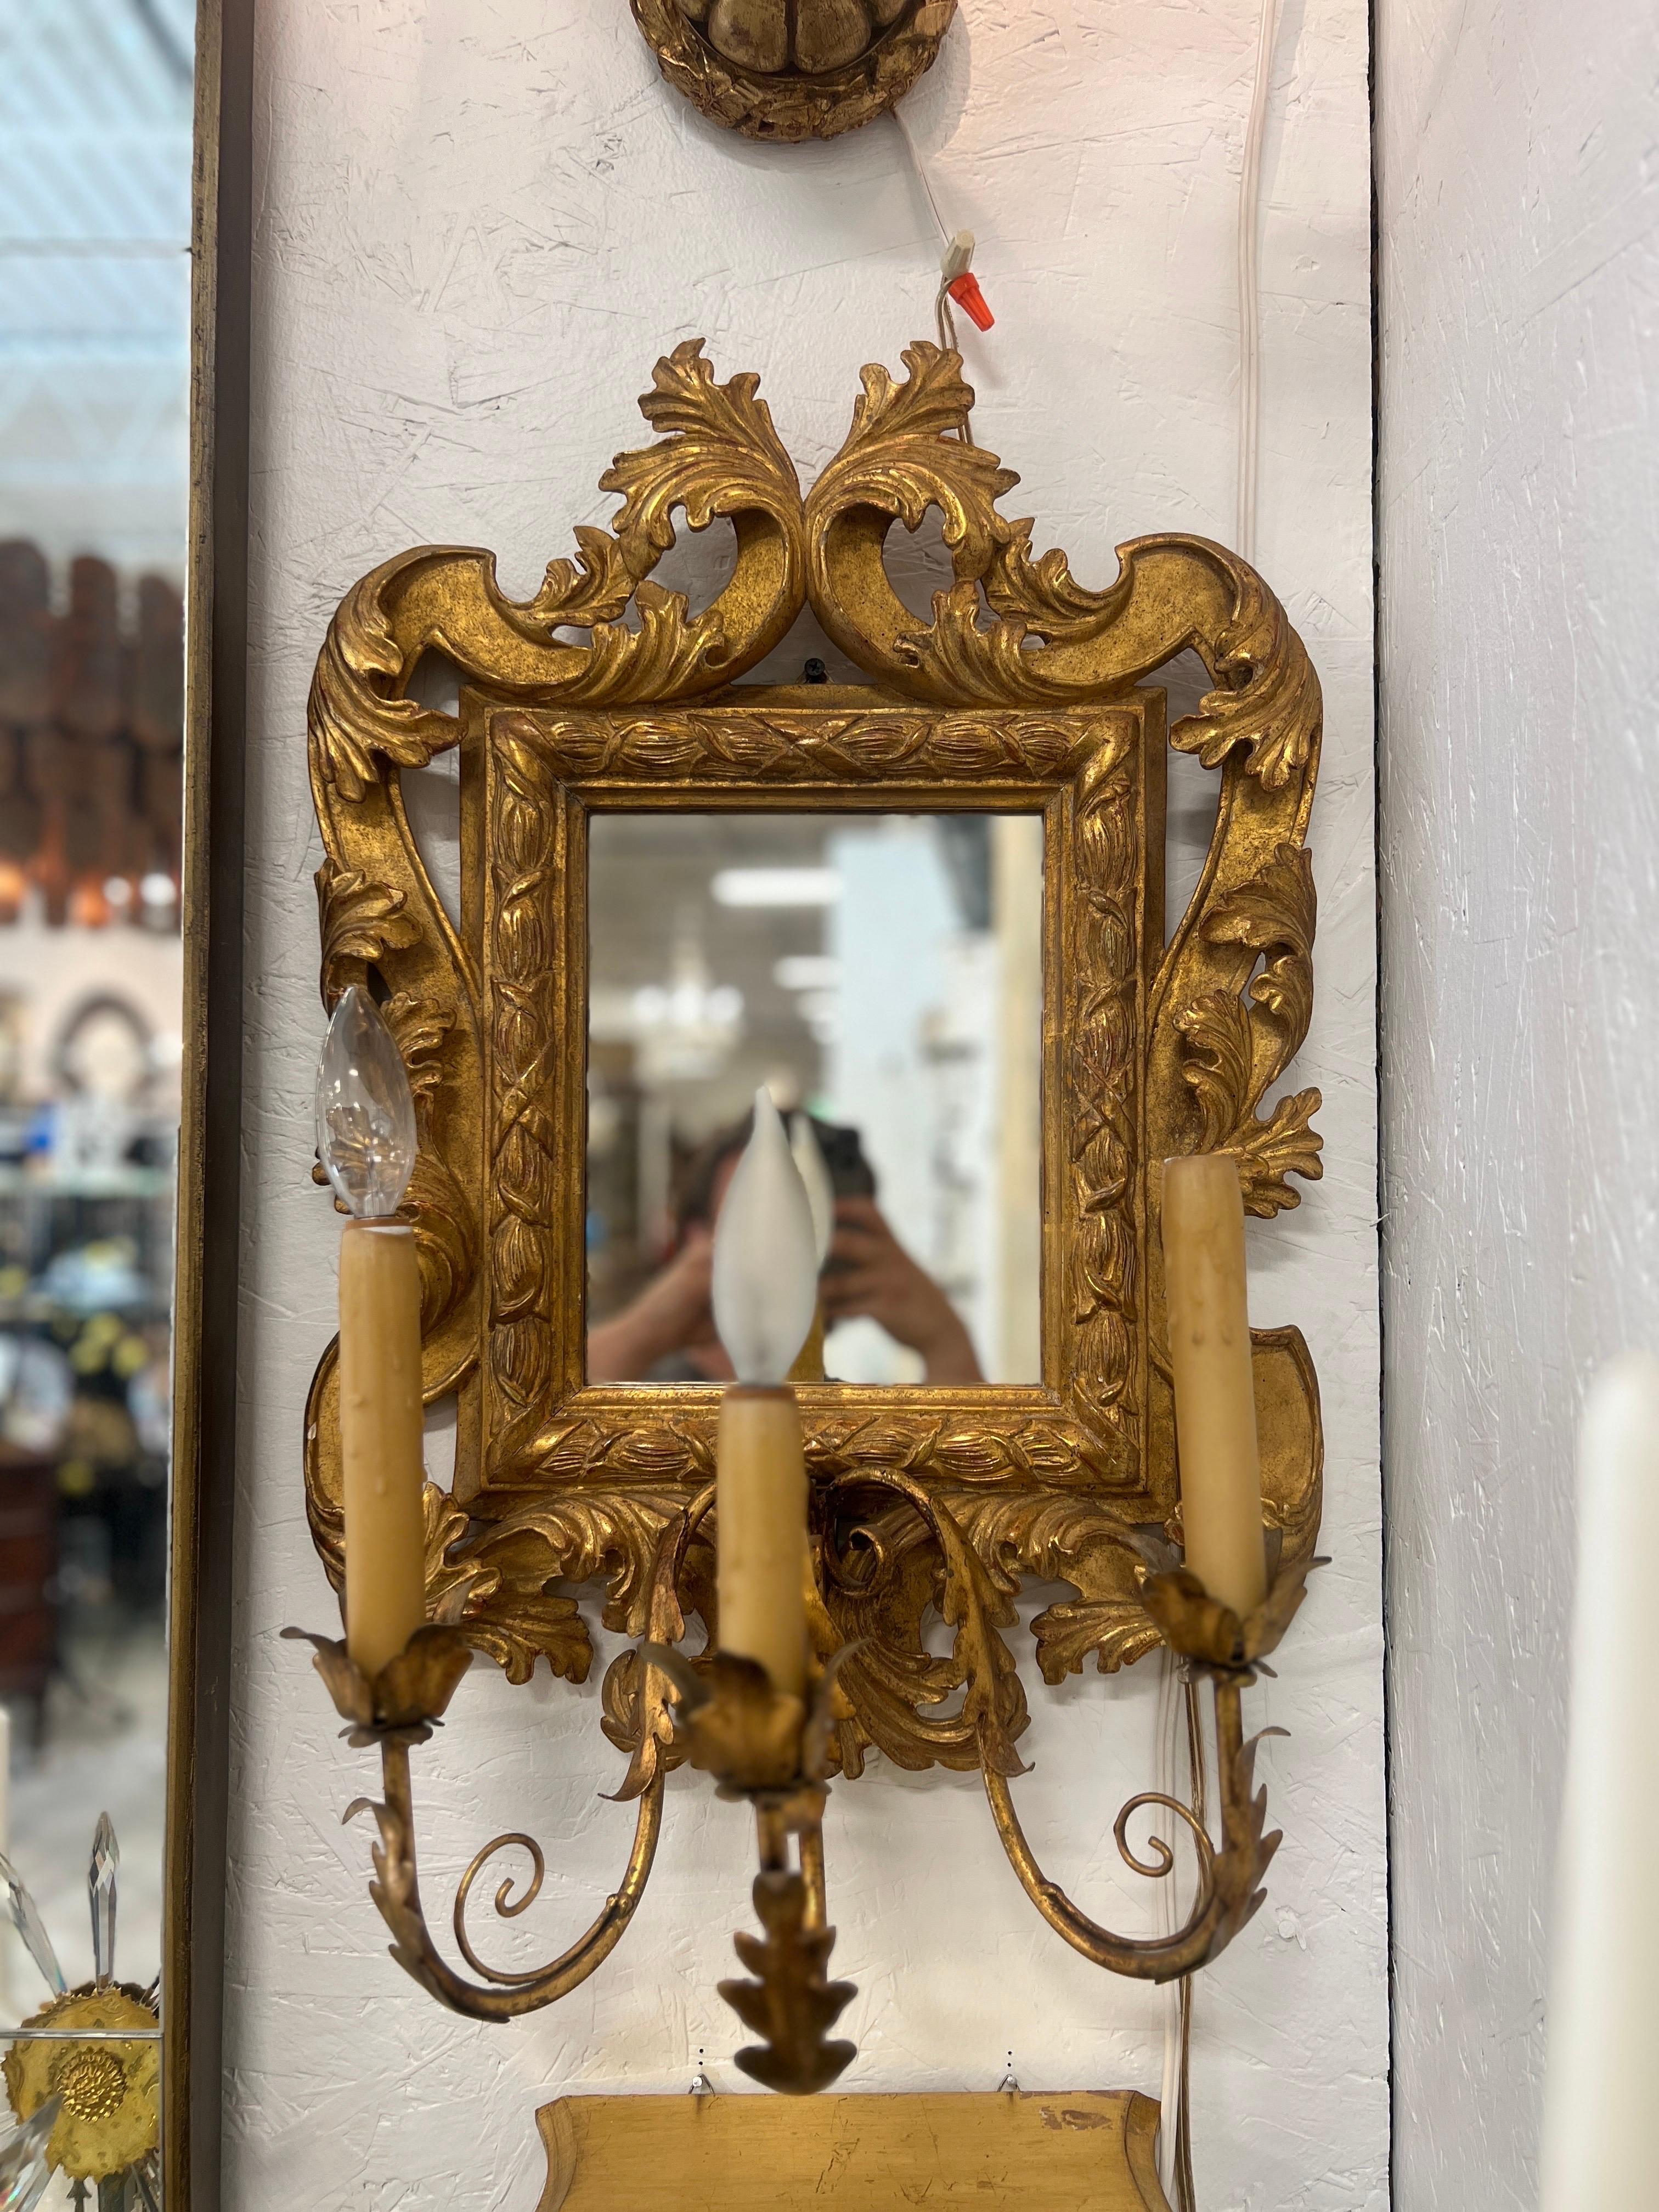 Italienisch, 20. Jahrhundert.

Ein Paar vergoldete Vintage-Spiegel aus Italien mit einem feinen Rahmen im Rokoko-Stil, Akanthusblatt-Schnitzereien und drei Akanthusarmen. Jeder Arm ist mit Wachskerzenabdeckungen elektrifiziert und in